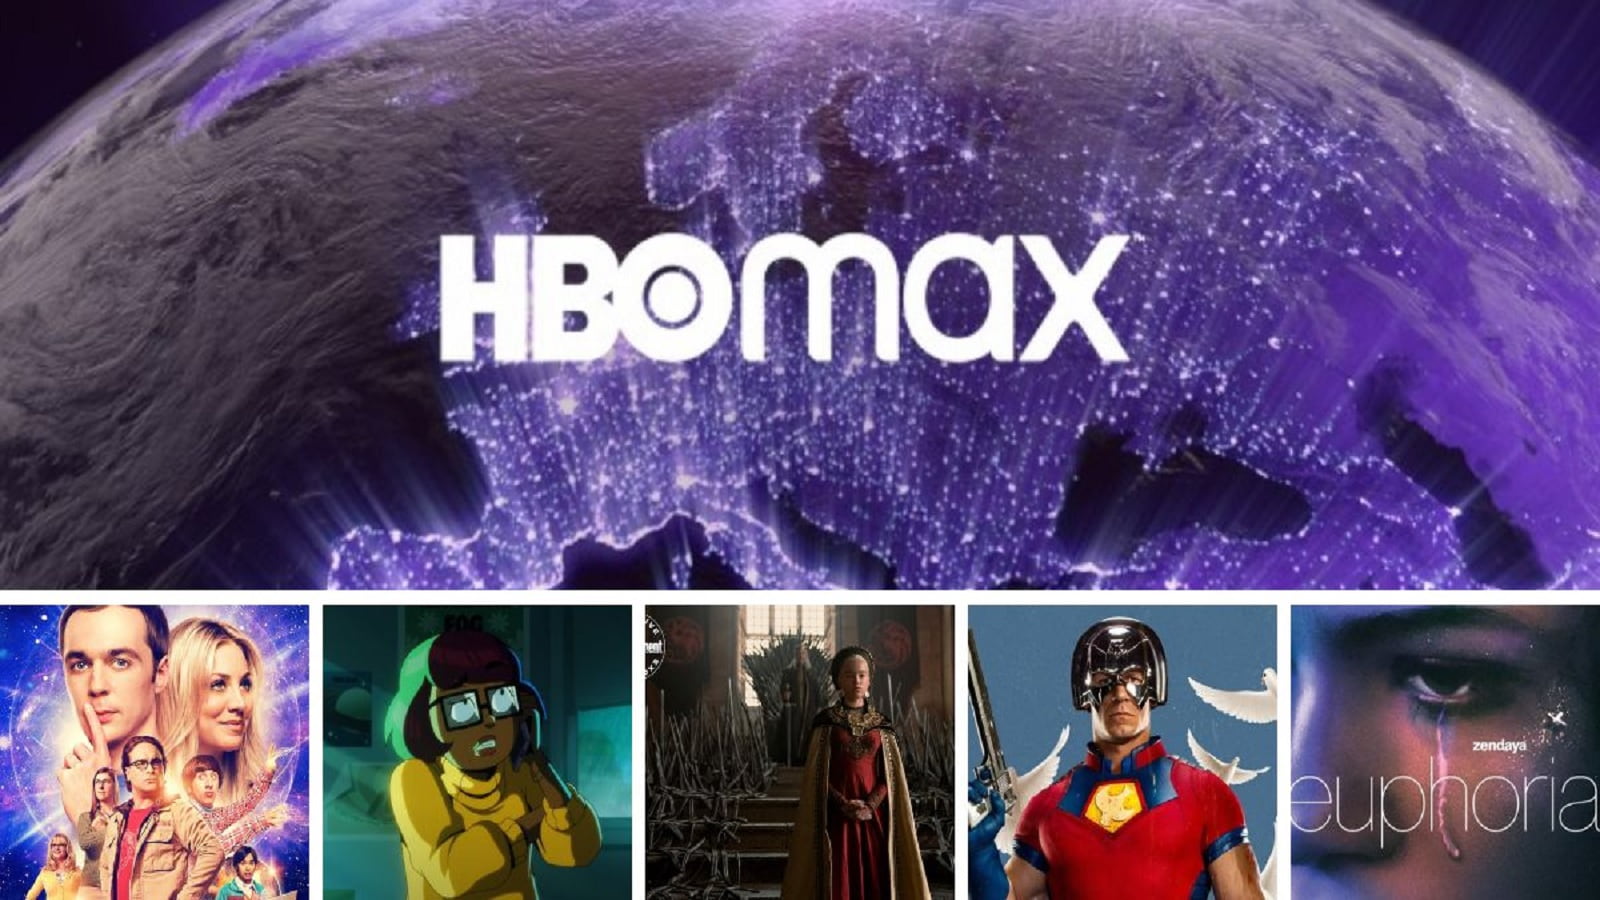 Como registrar a tela HBO Max?